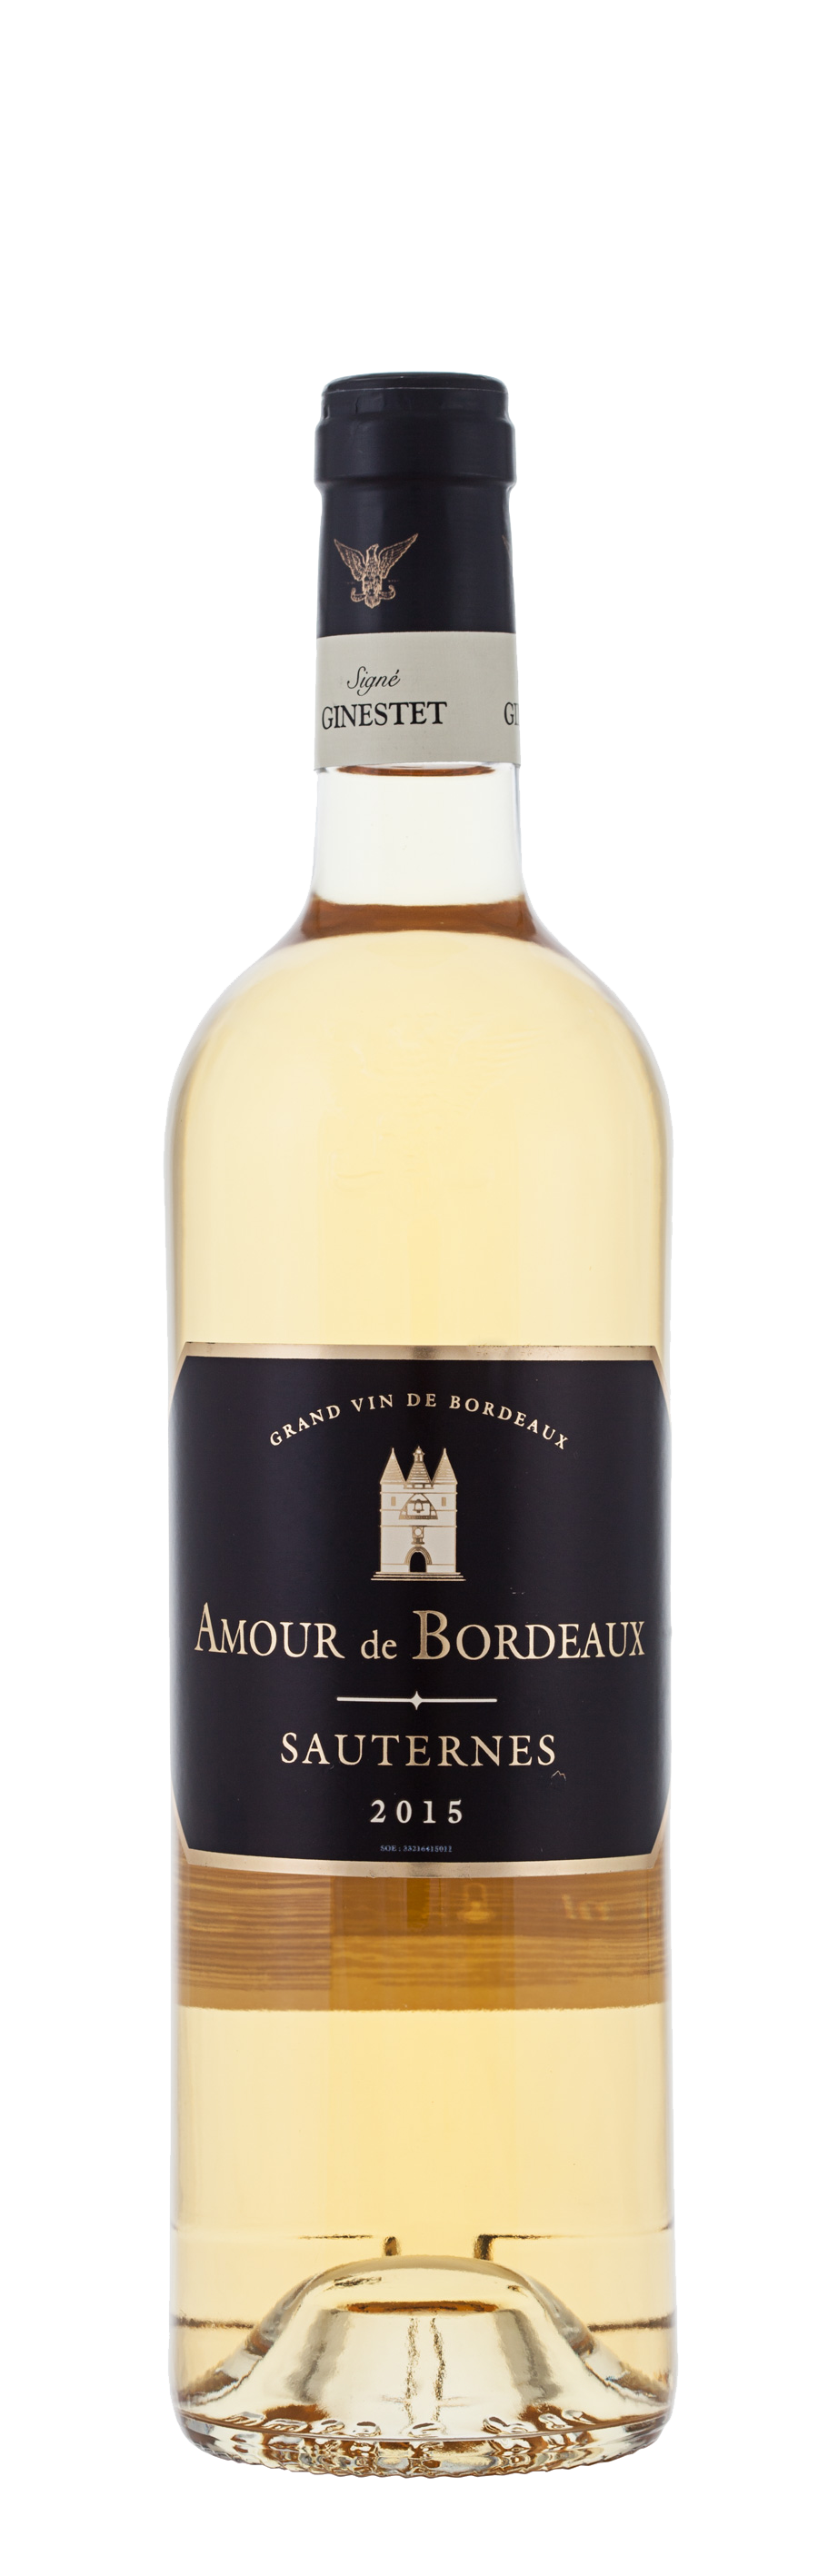 Site Officiel | de Amour Bordeaux